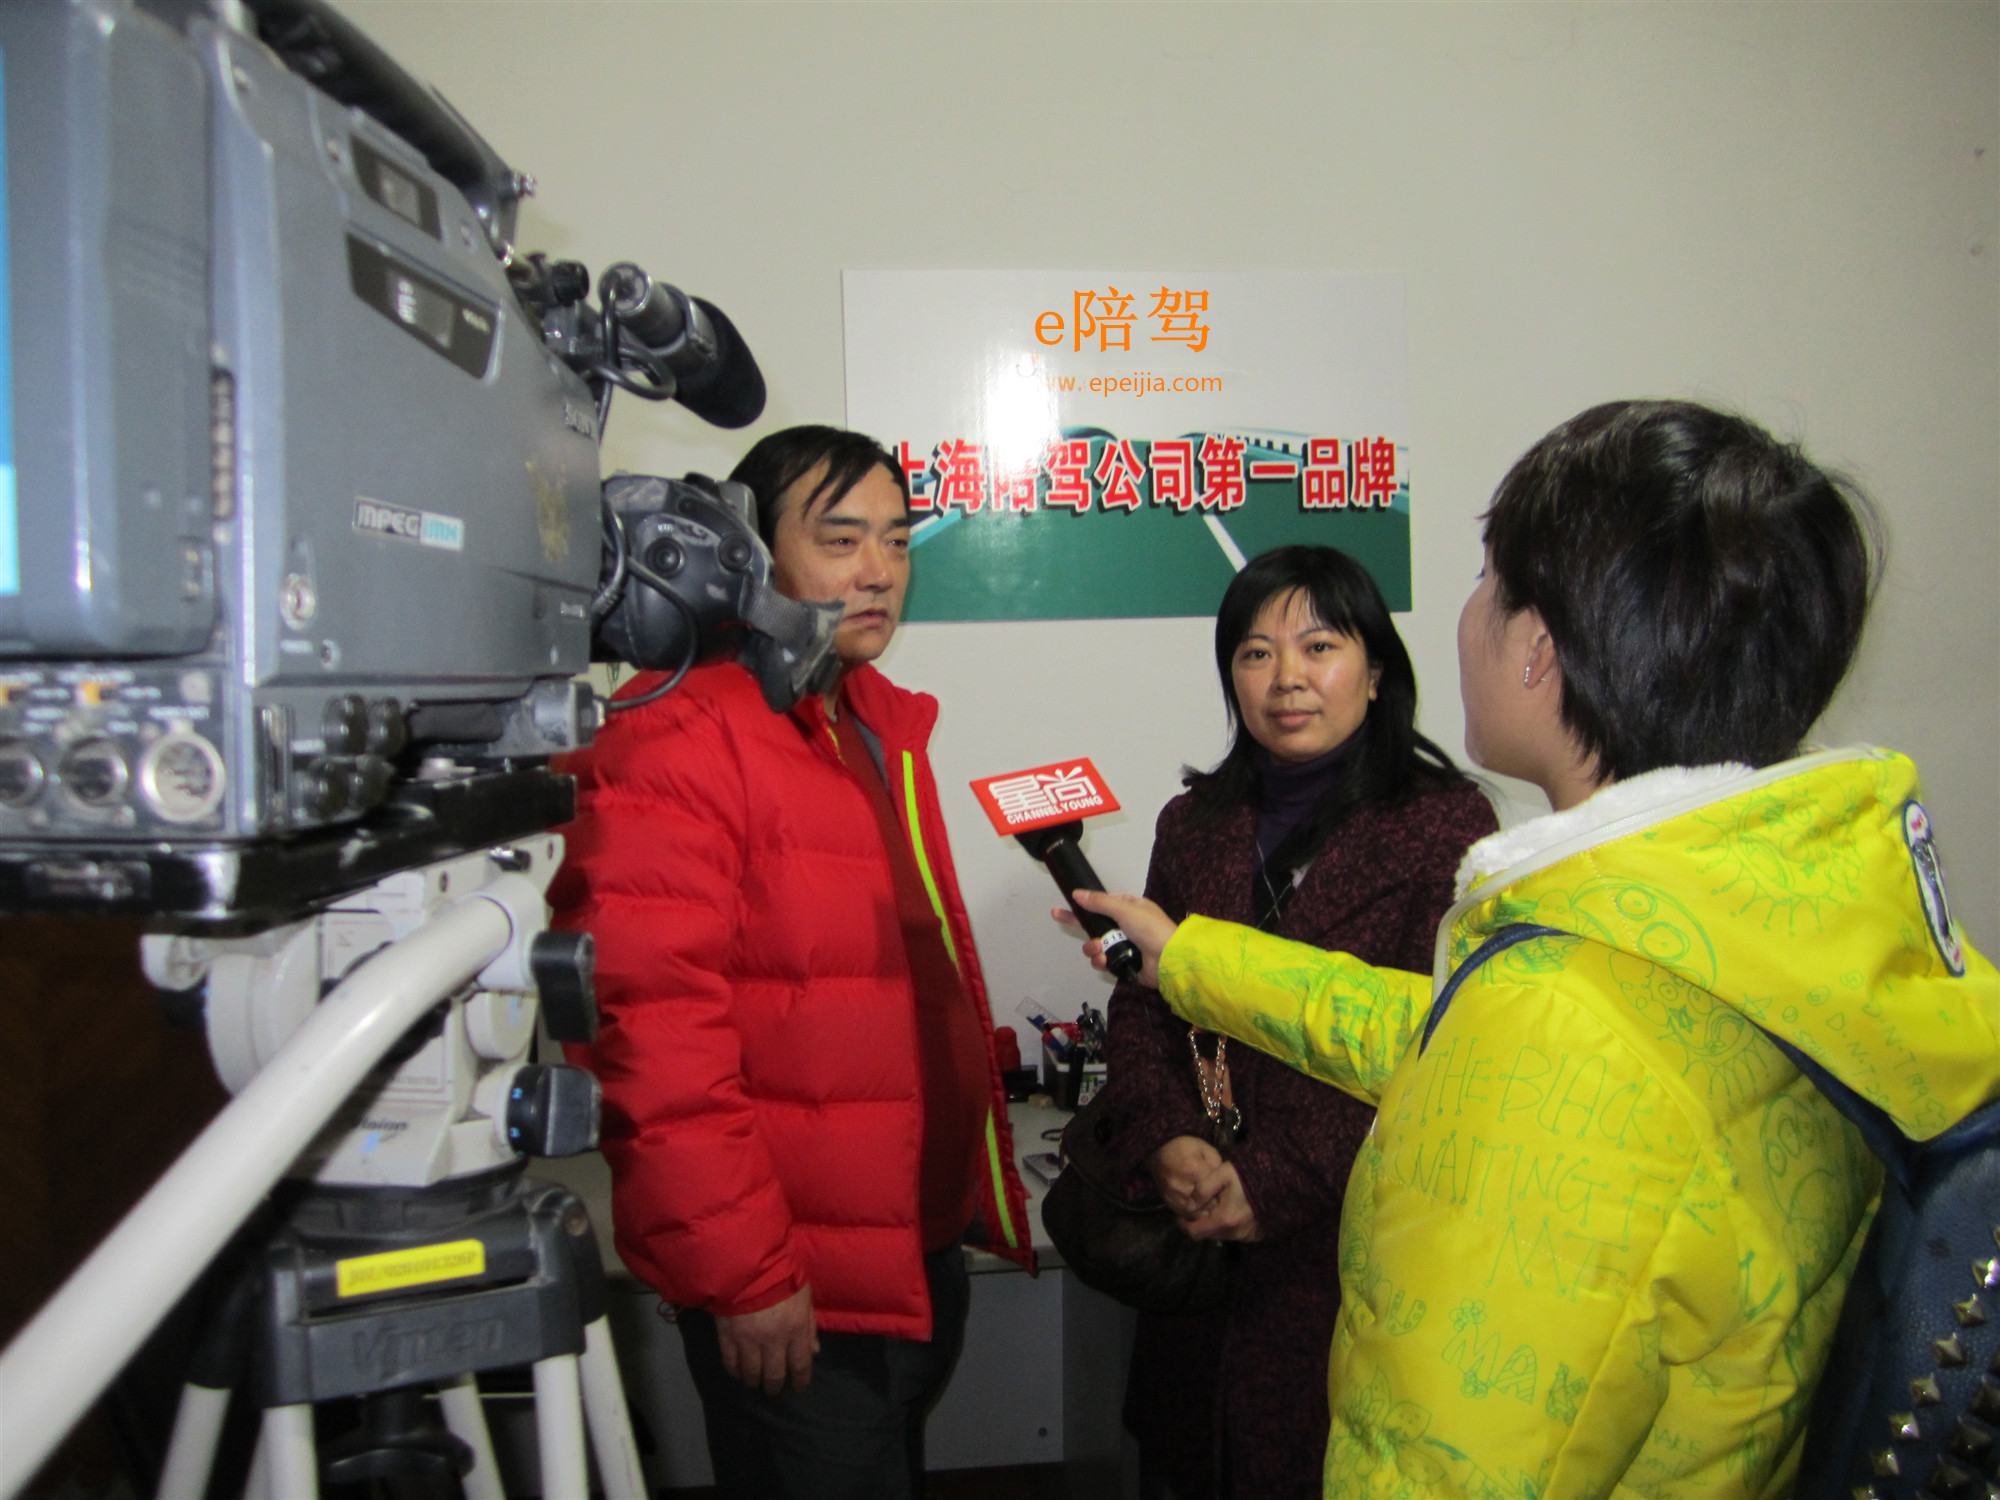 上海电视台采访本企业